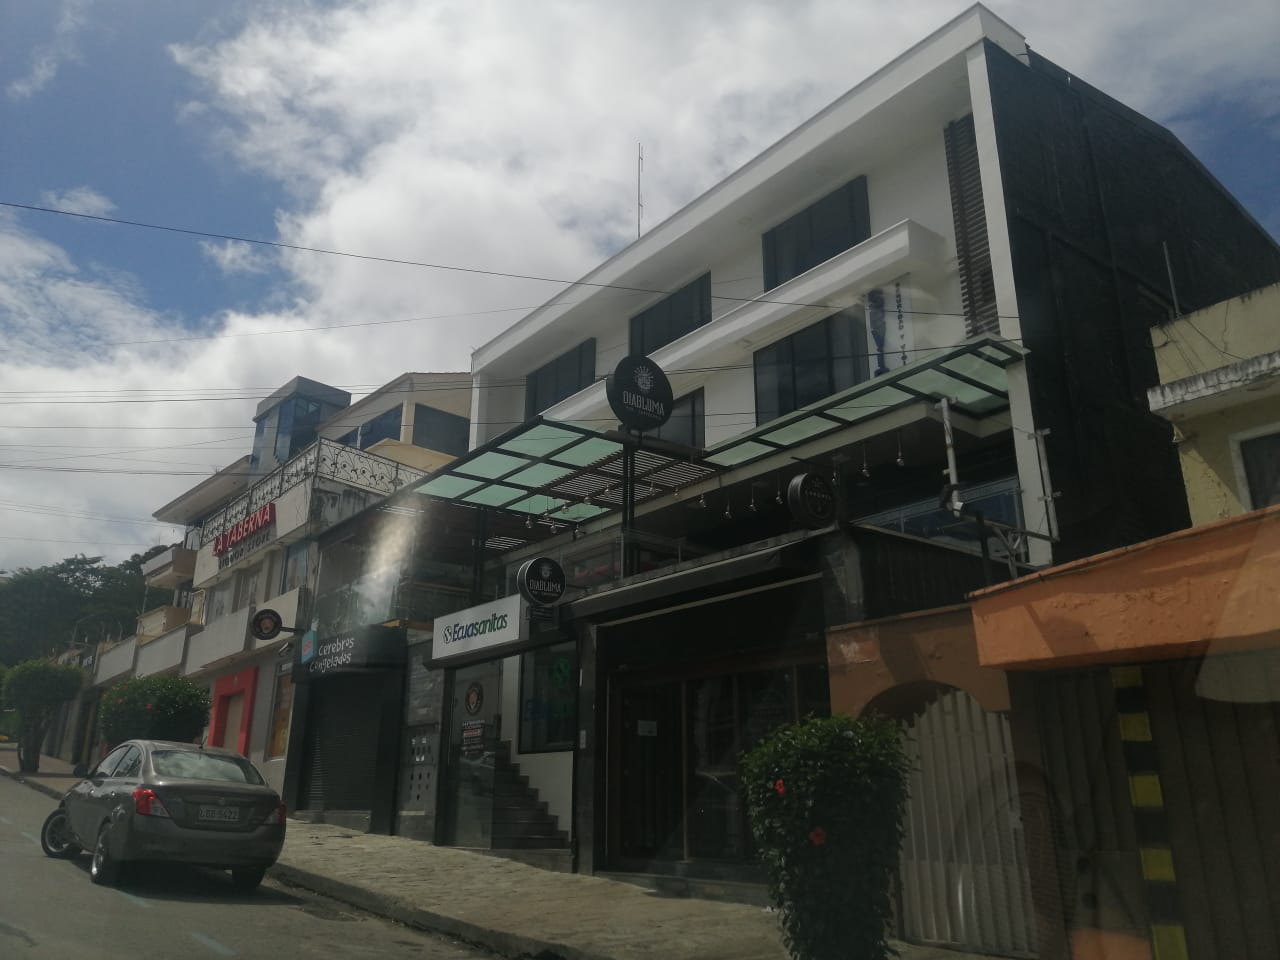 Bares y discotecas de La Pileta no tendrán permisos de funcionamiento desde junio